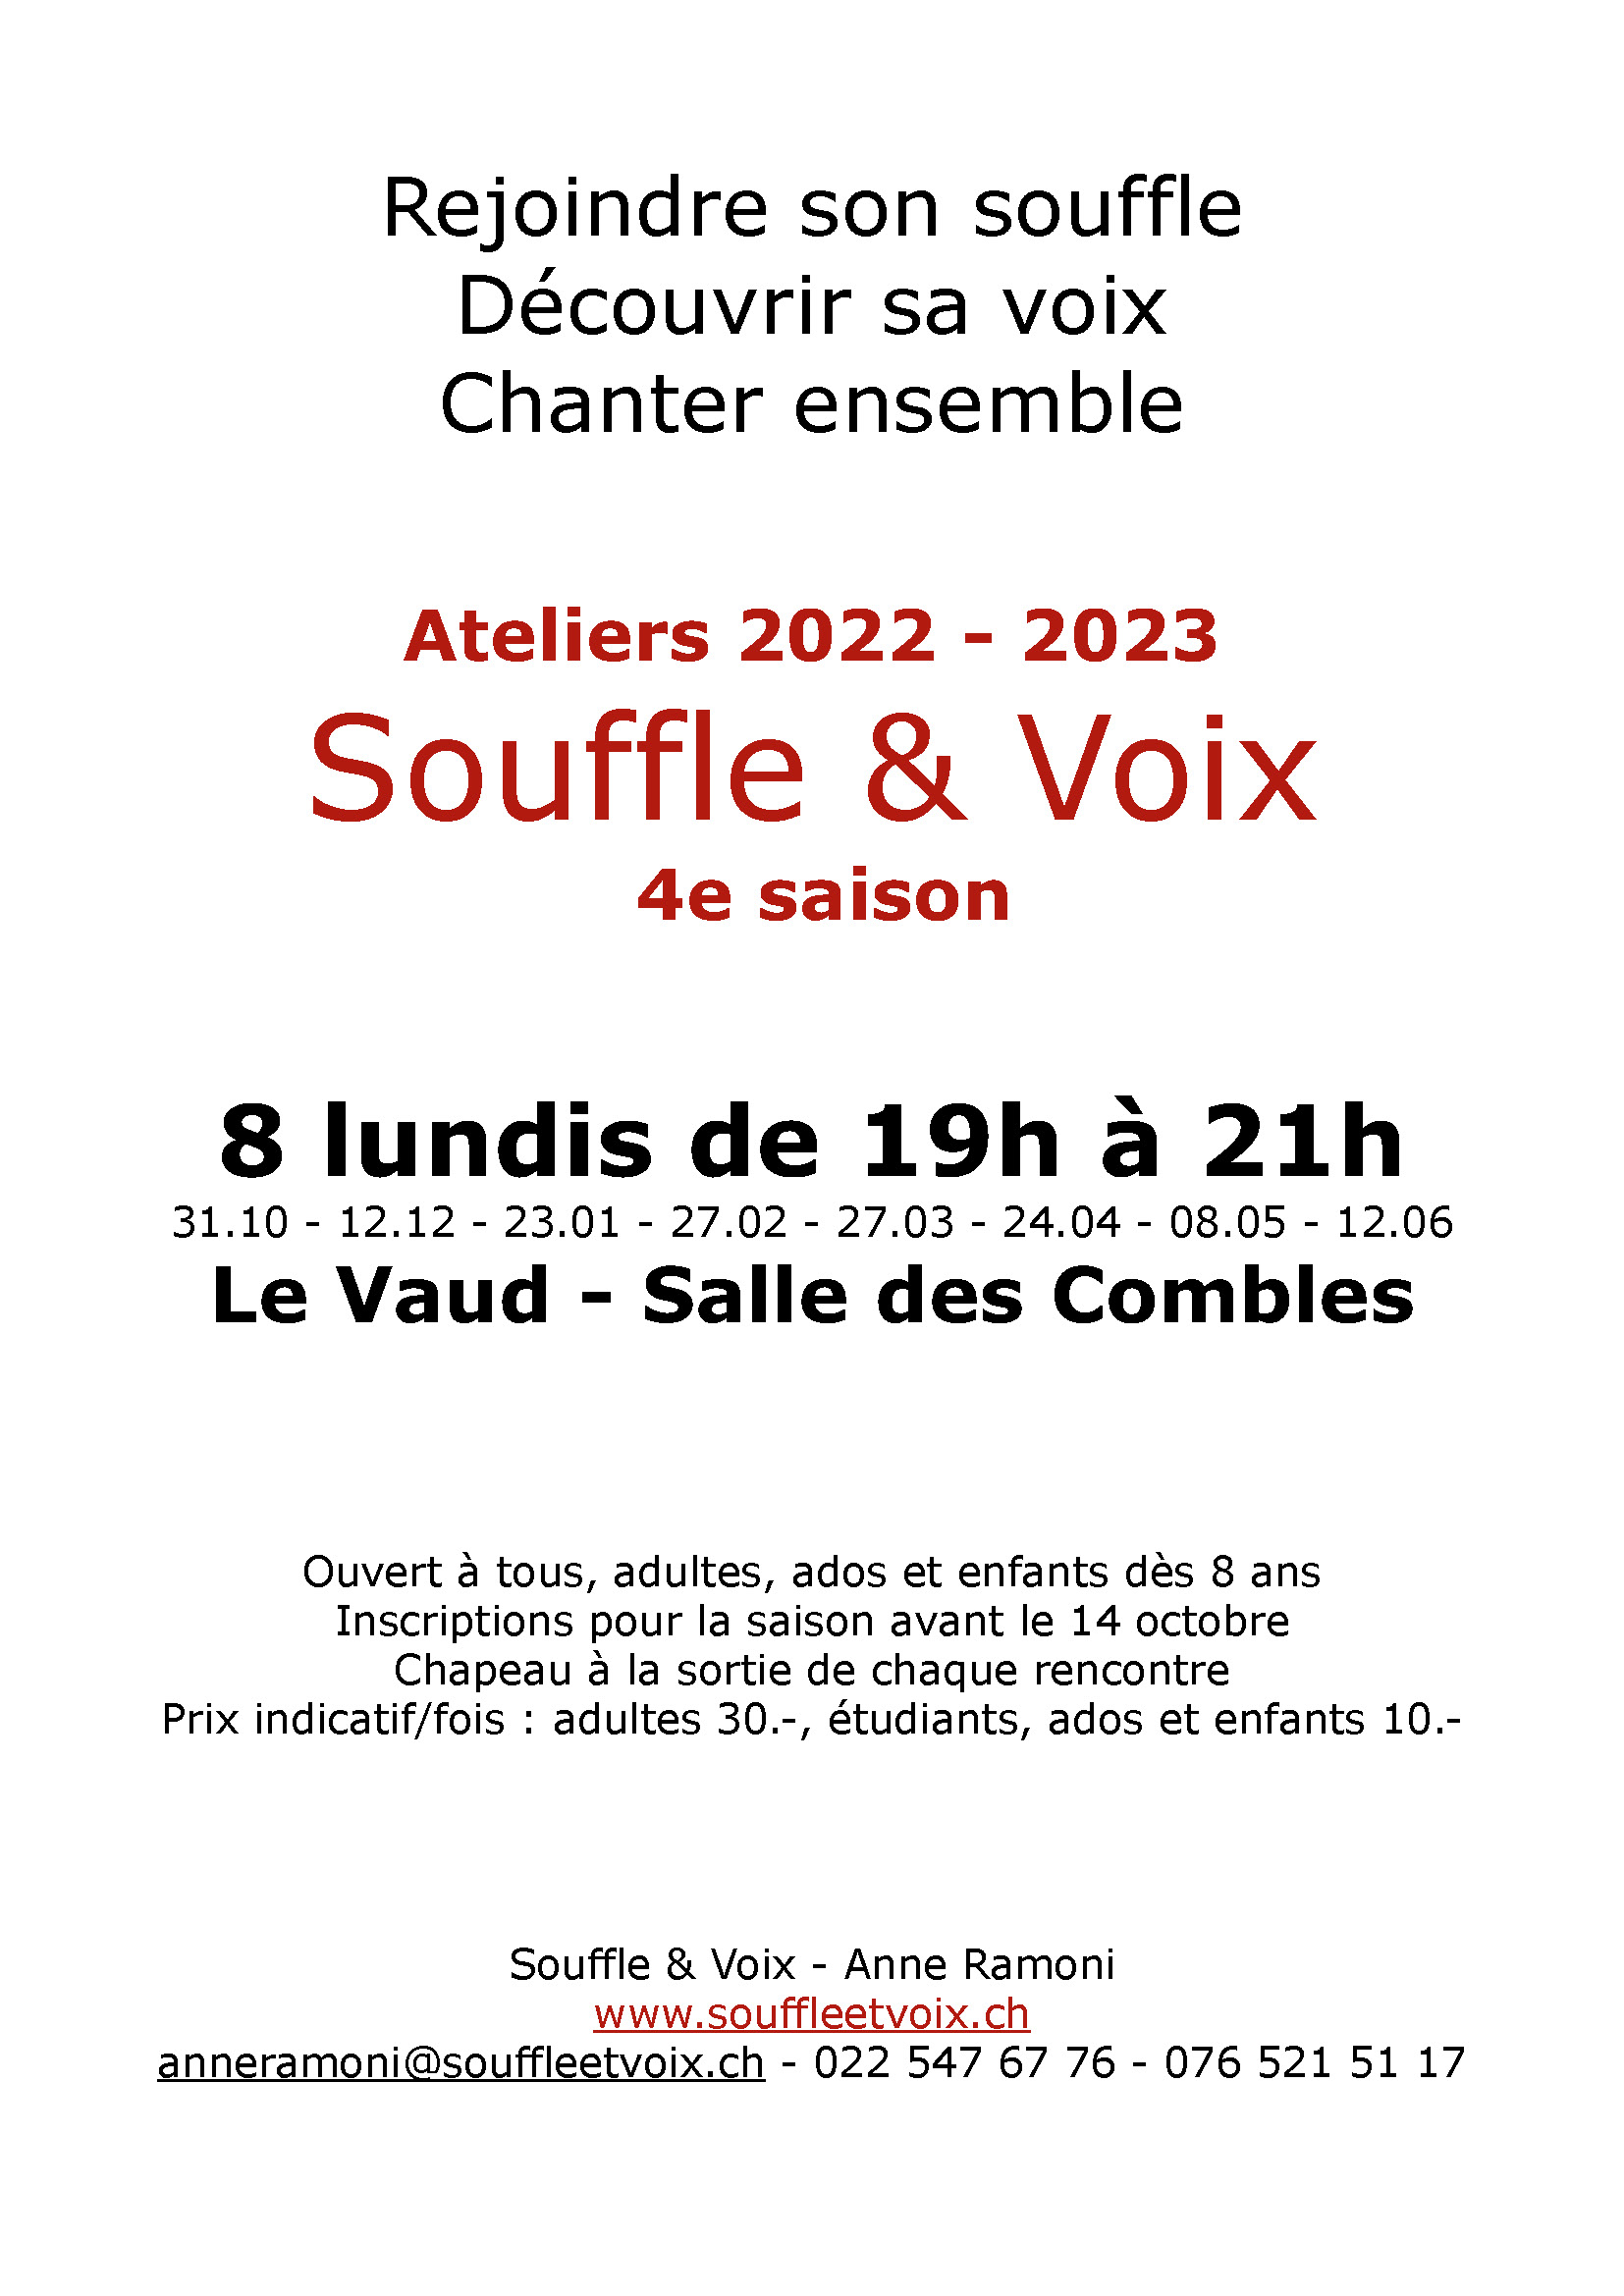 Atelier Souffle et Voix 2022 2023